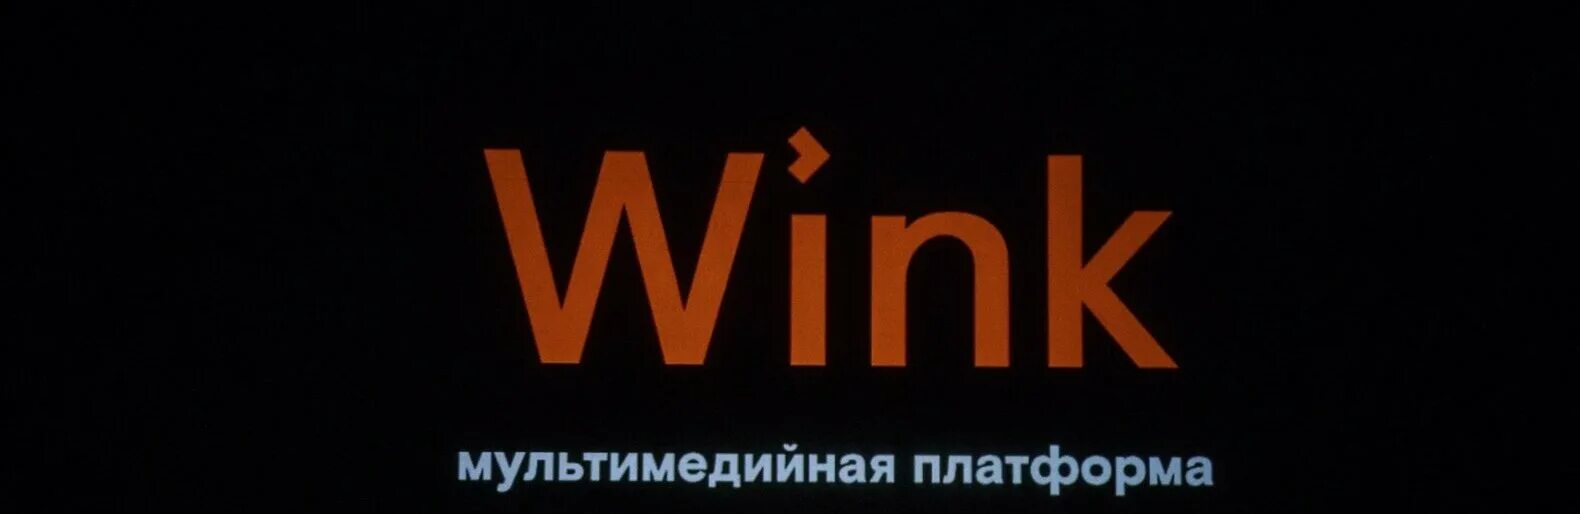 Wink Ростелеком. Wink логотип. Wink Ростелеком logo. Wink кинотеатр. Винкс ростелеком телефон